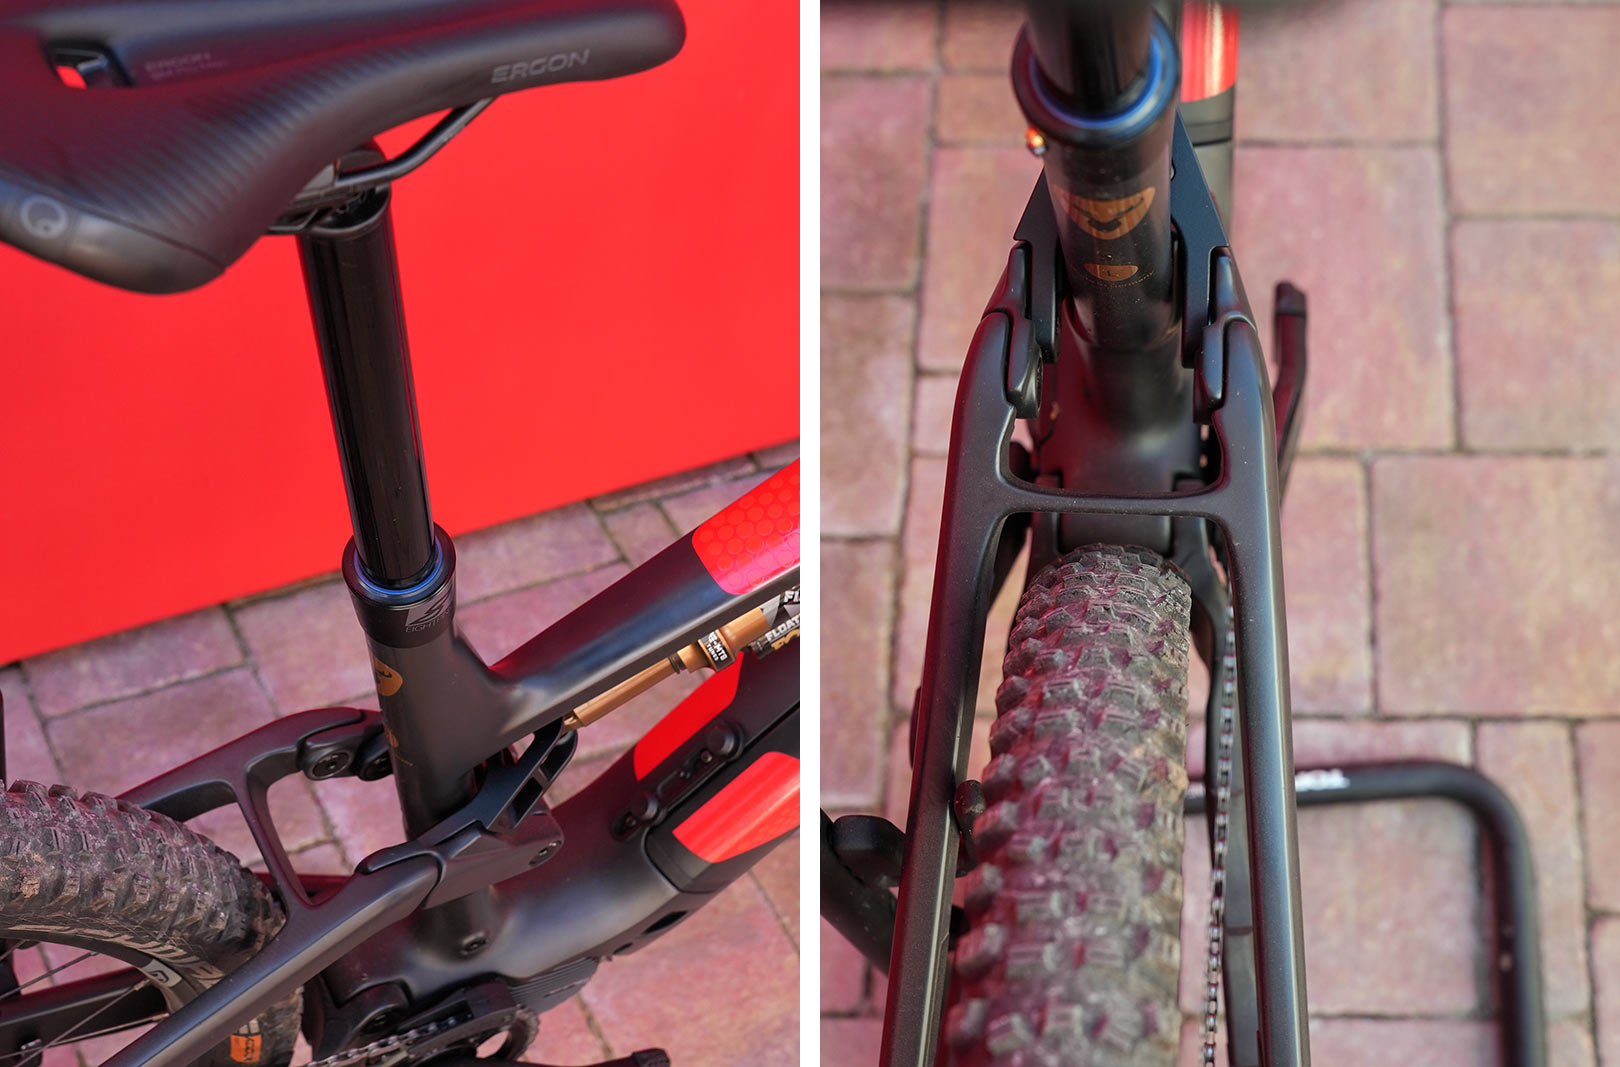 rotwild rx735 lightweight e-mountain bike suspension details